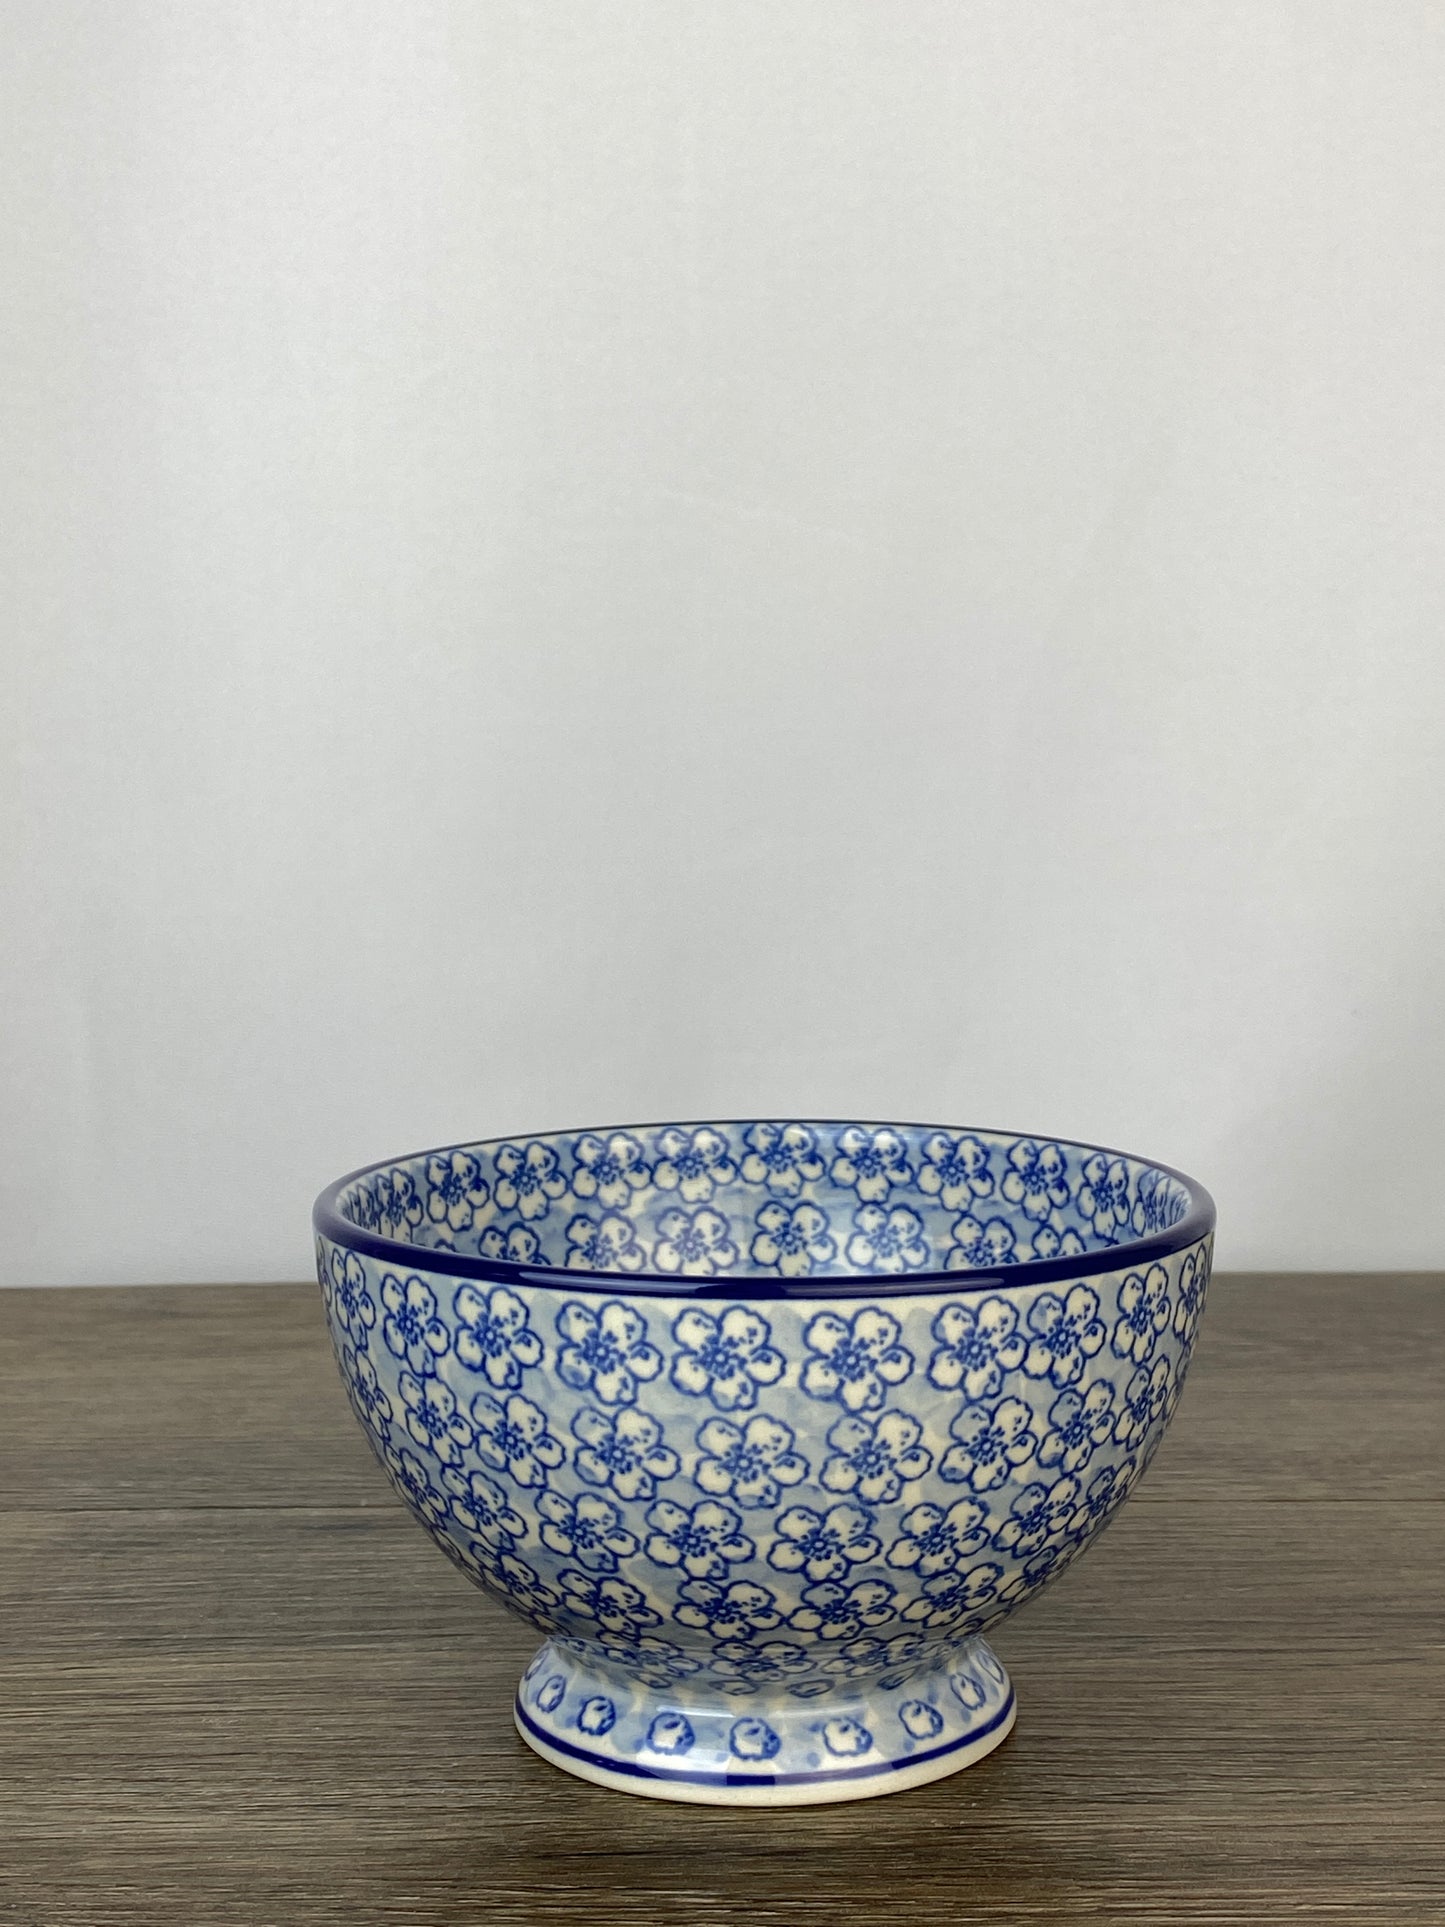 Pedestal Bowl - Shape 206 - Pattern 2176